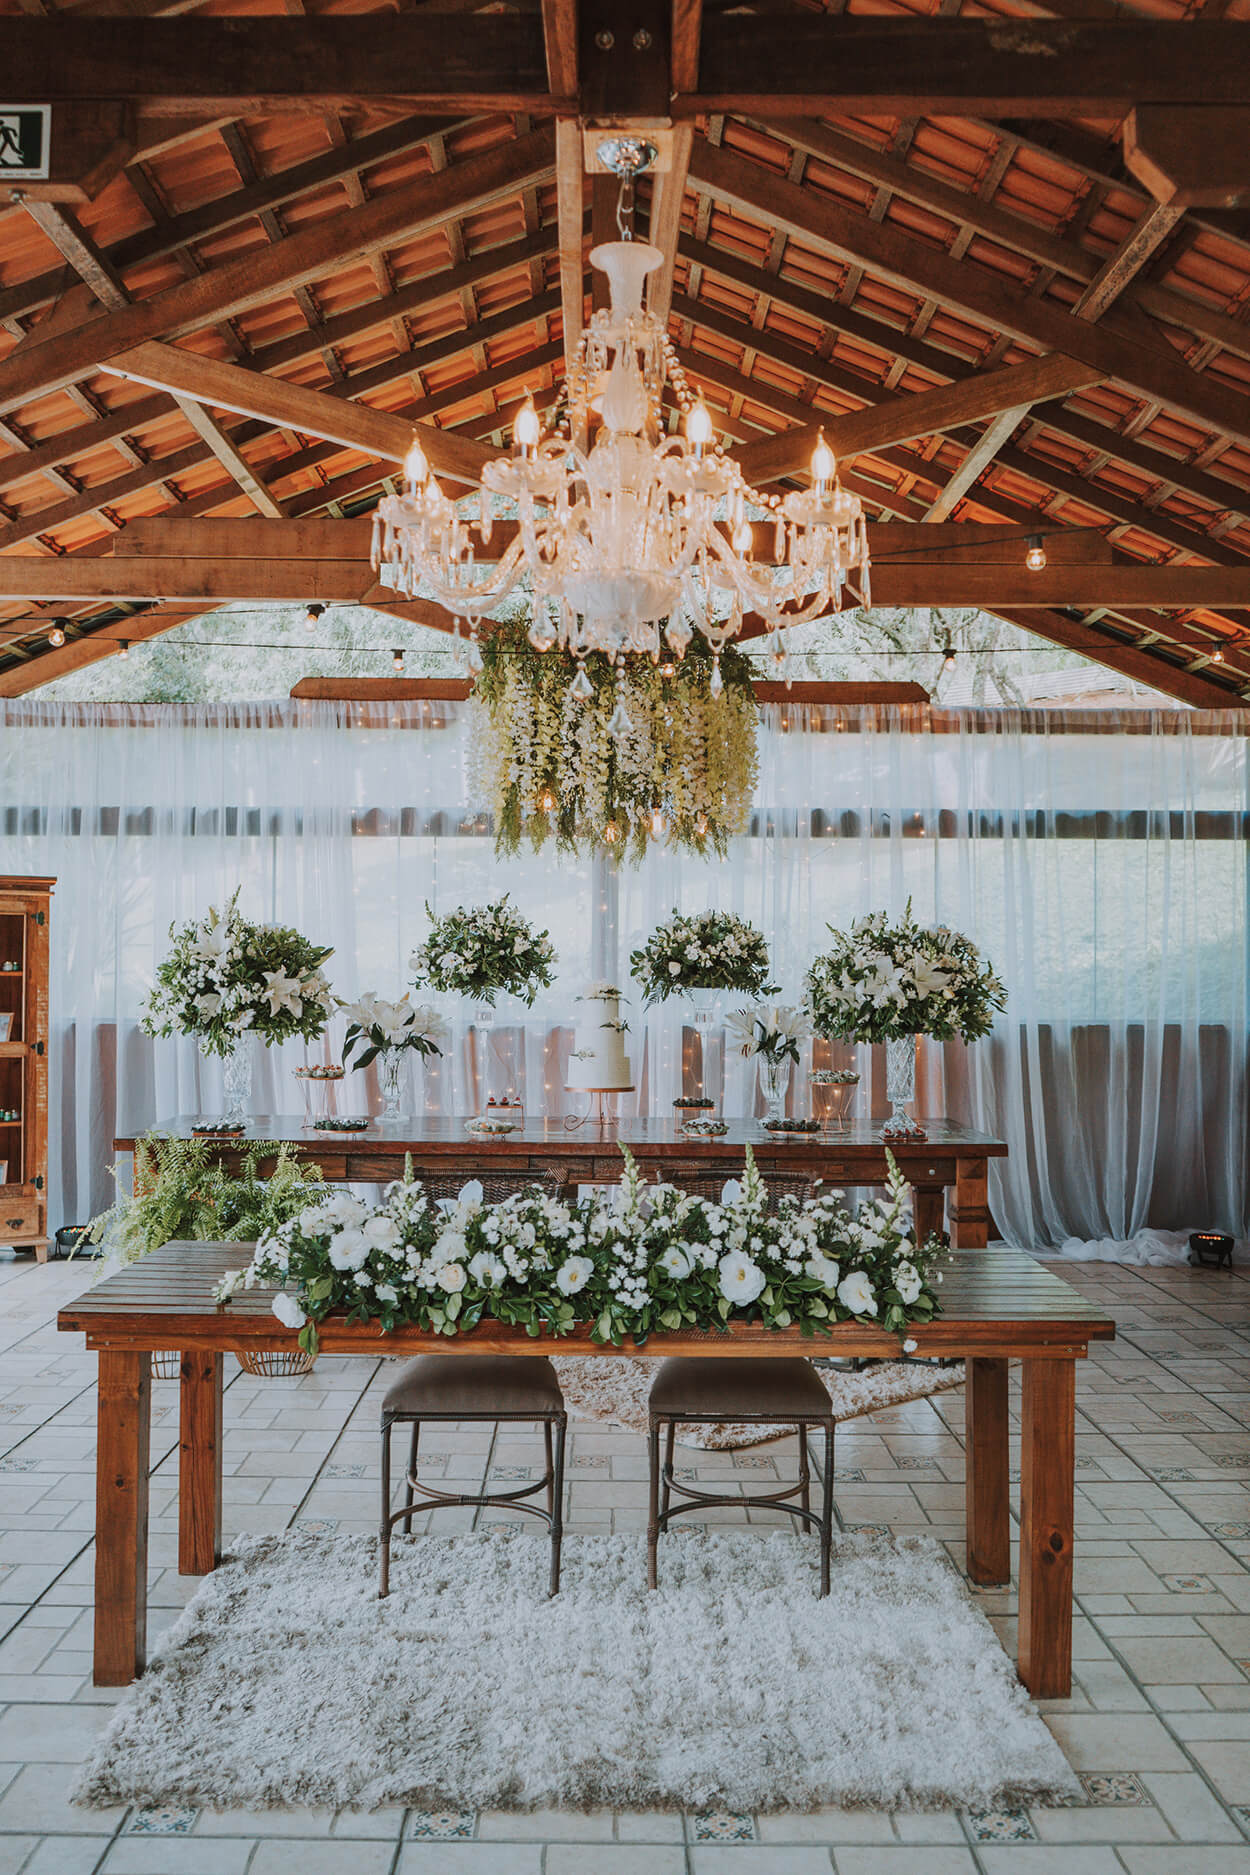 Salão com mesa de madeira com bolo de casamento e arranjos com flores brancas